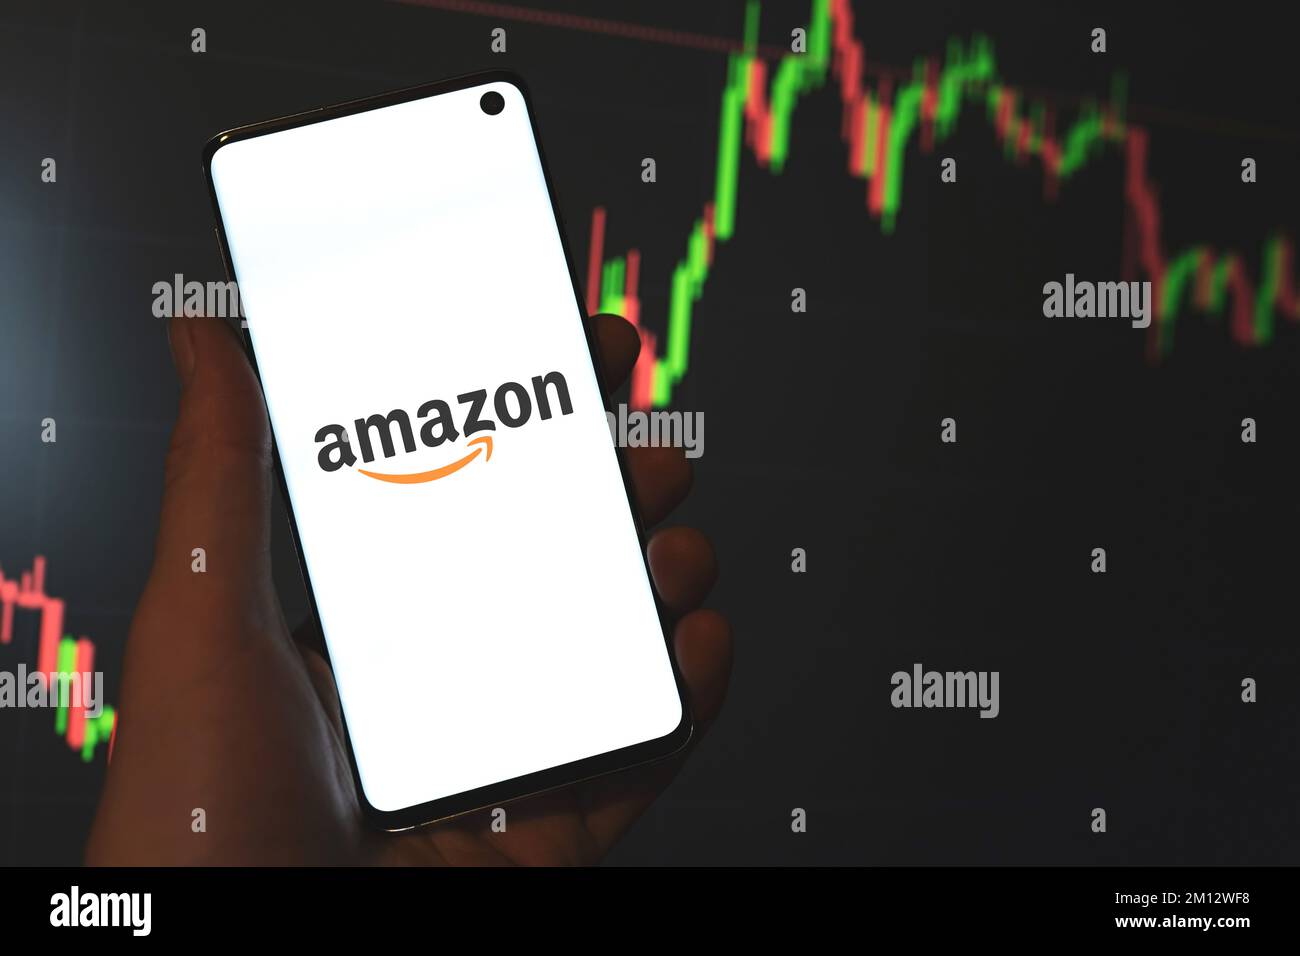 Logo Amazon Inc. Visualizzato sullo schermo del telefono in mano, grafico delle scorte, barra del grafico a linee sfondo scuro. Swansea, Regno Unito - 26 agosto 2021. Foto Stock